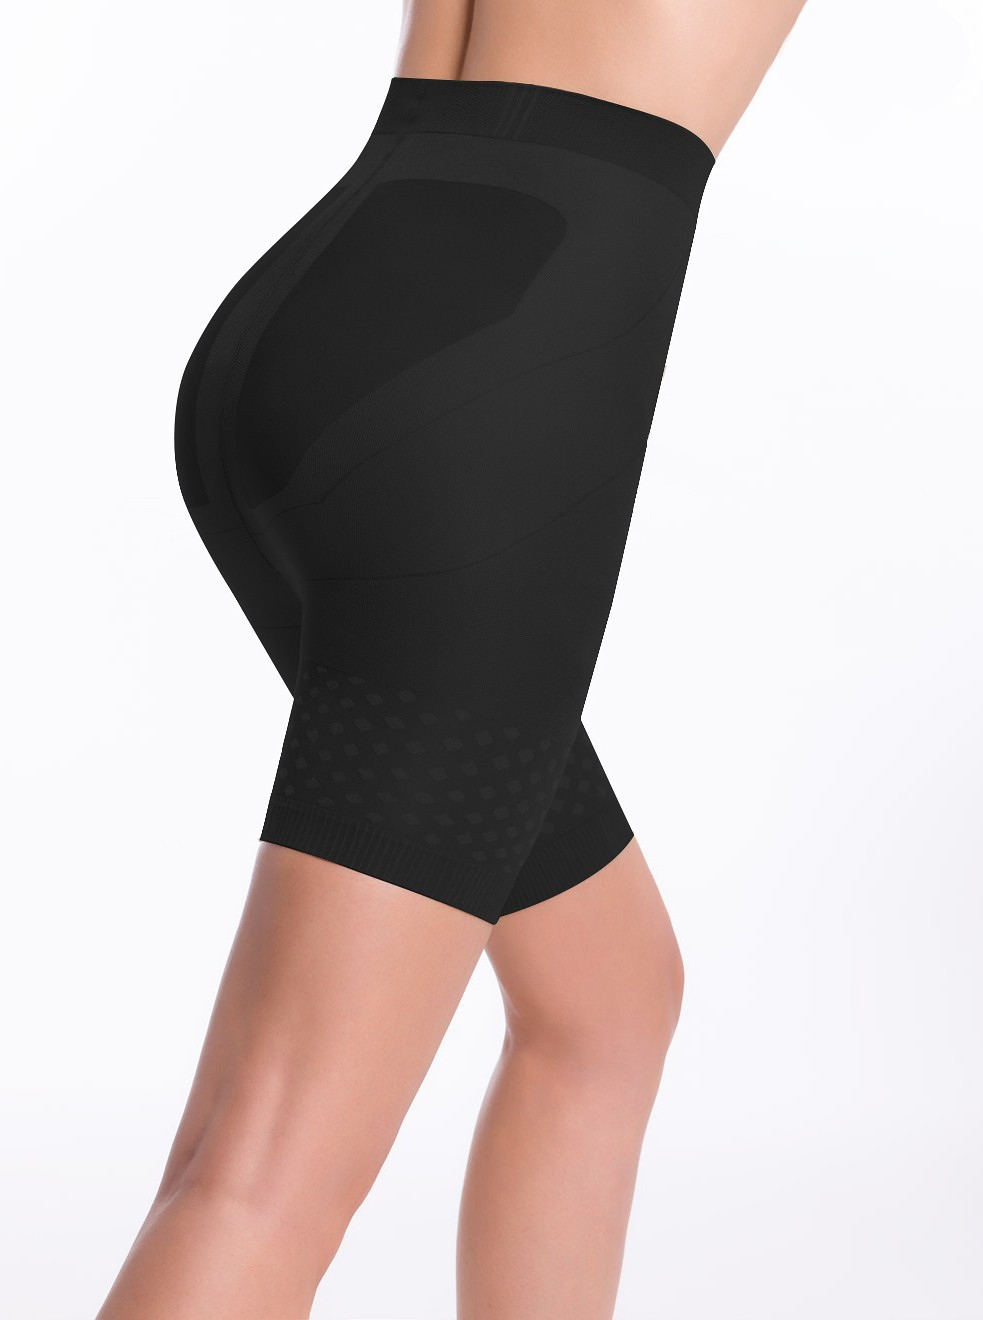 Dámské kalhotky Panty Slim Up model 9134822 - Envie Barva: nero/černá, Velikost: 3-M